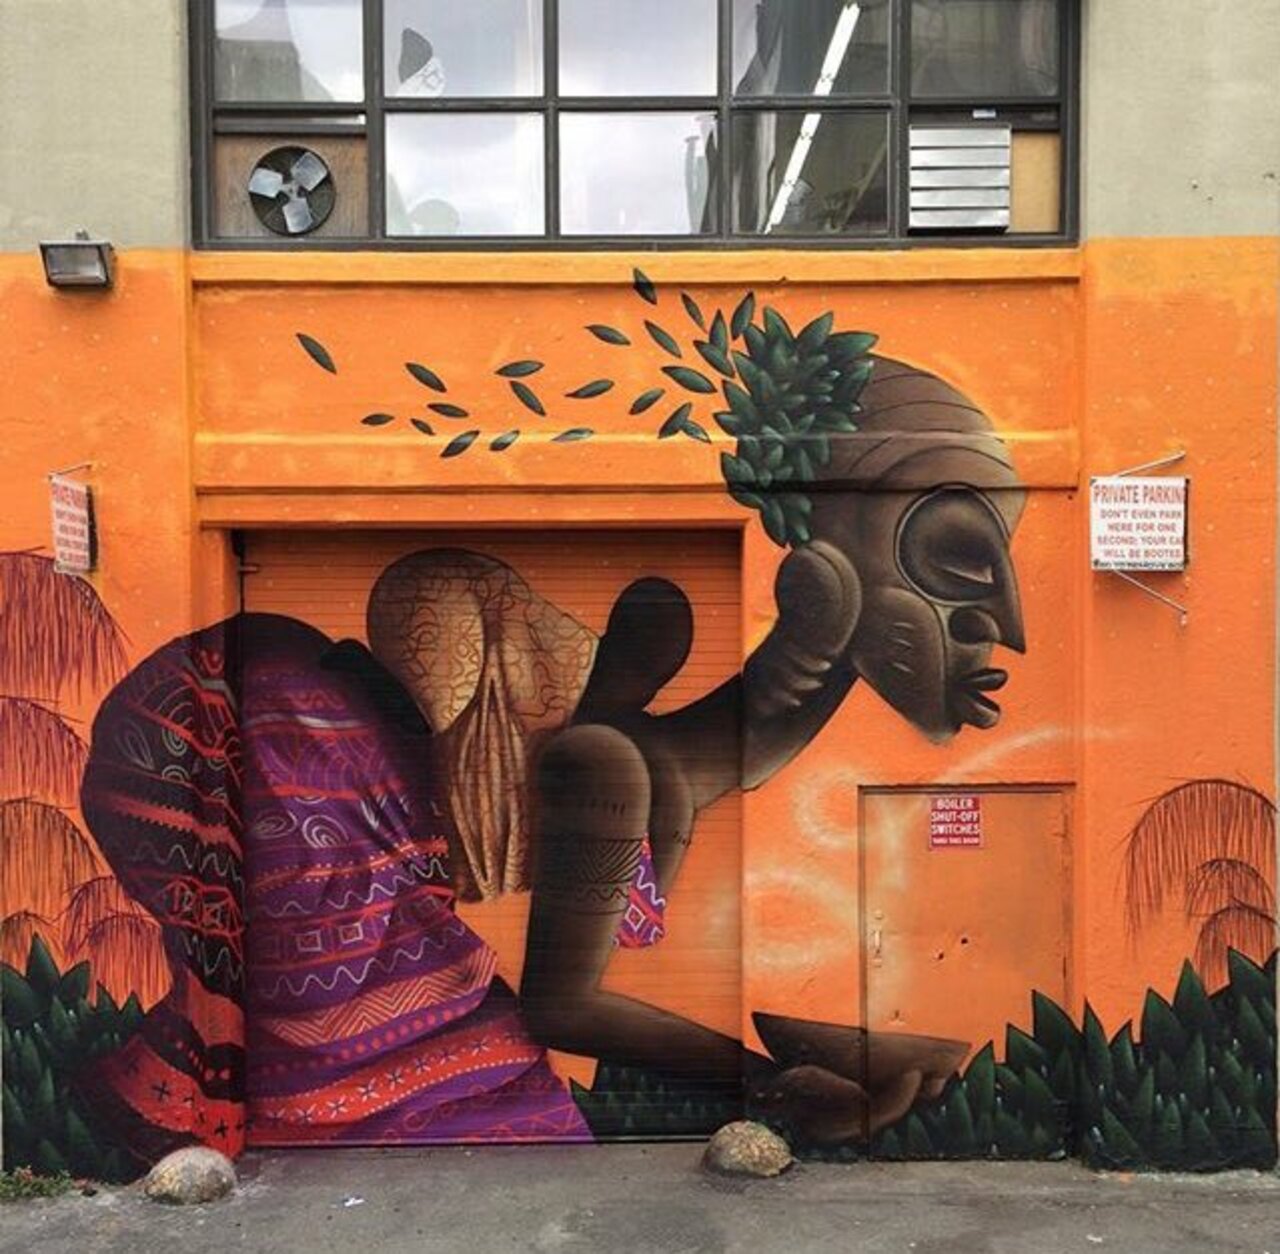 New Street Art by Alexandre Keto in NYC 

#art #graffiti #mural #streetart https://t.co/5GlAopJczl